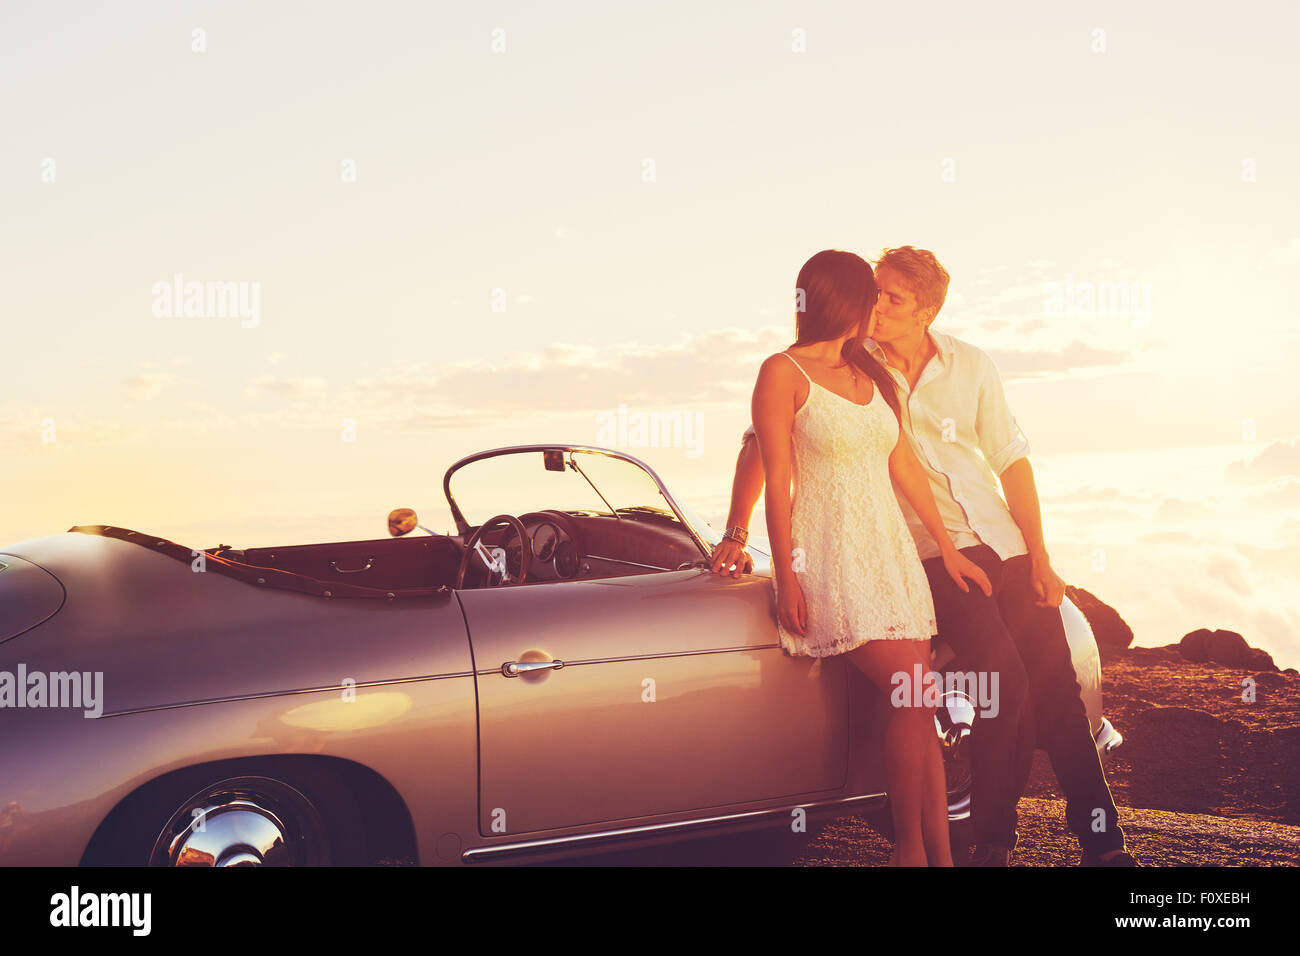 Luxus auto Innenraum mit Sonnenuntergang Beleuchtung und Reflexionen, warme  Farben Stockfotografie - Alamy